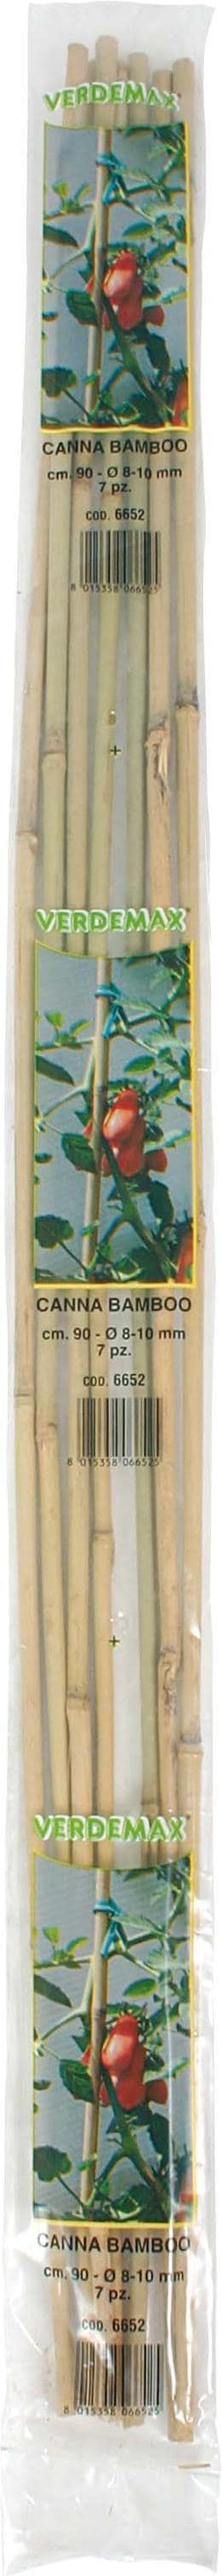 Verdemax Pflanzenstützen (0.80 cm 0.80 cm) kaufen